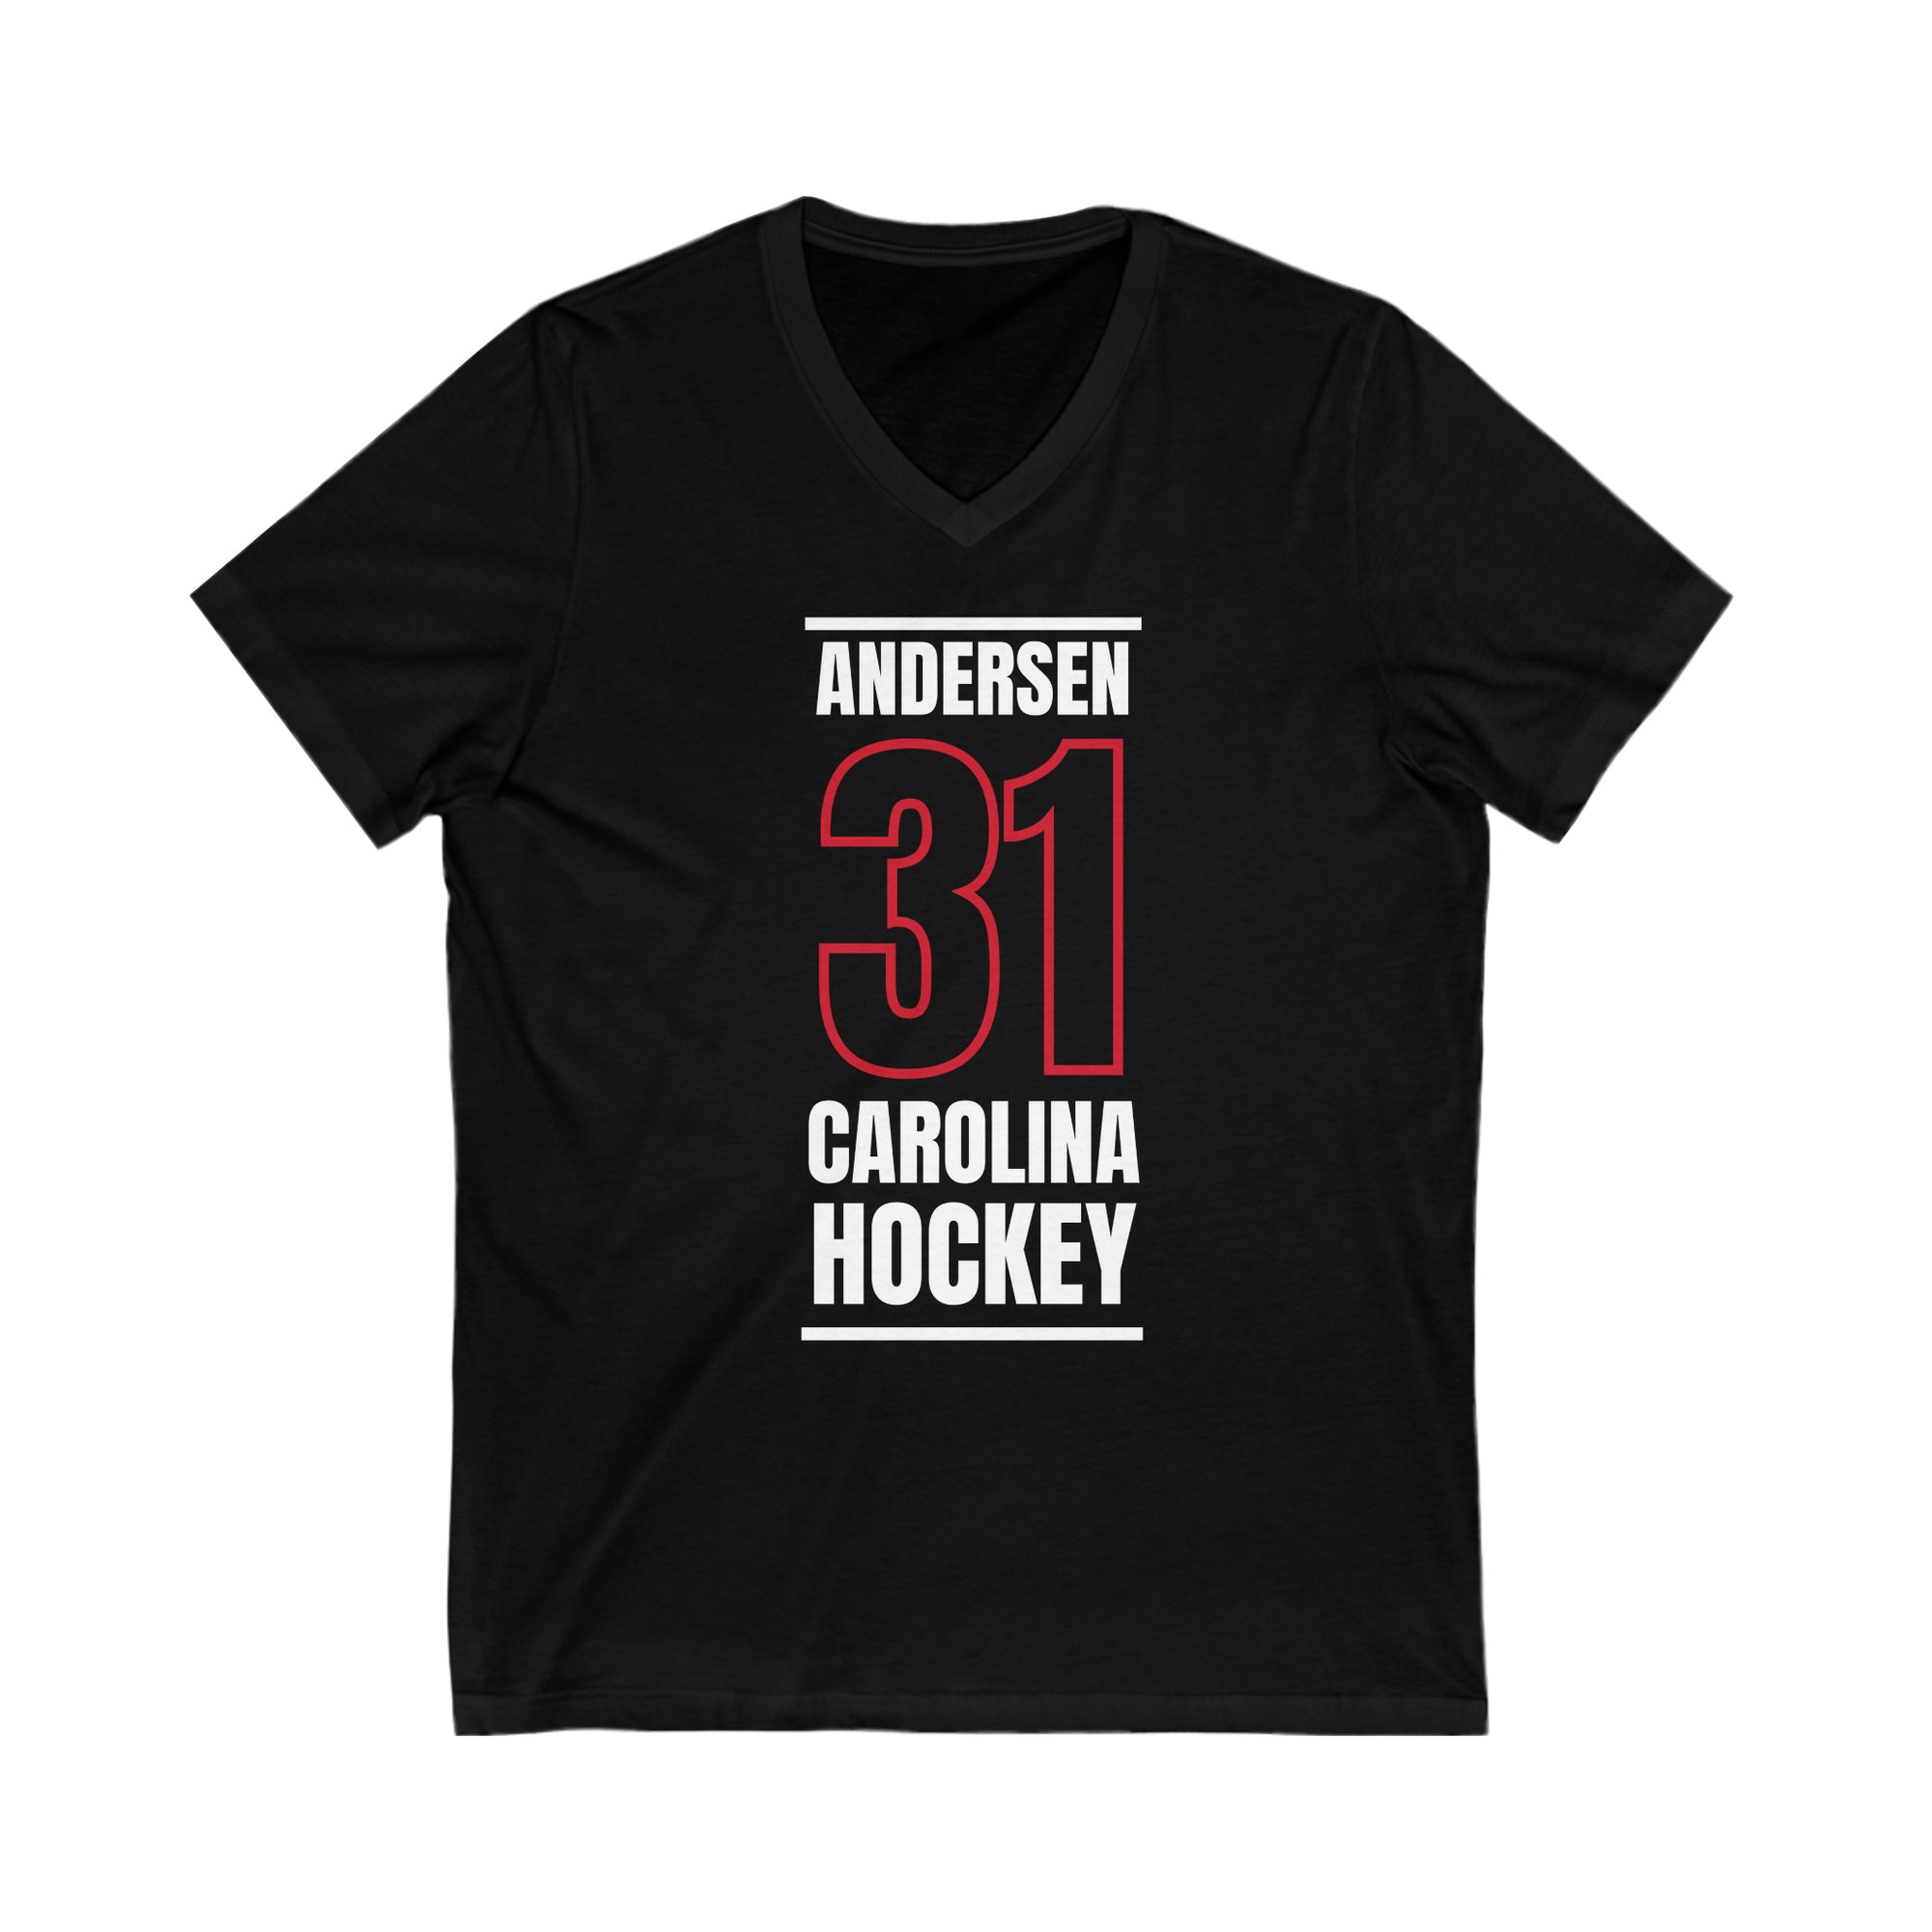 Andersen 31 Carolina Hockey Black Vertical Design Unisex V-Neck Tee